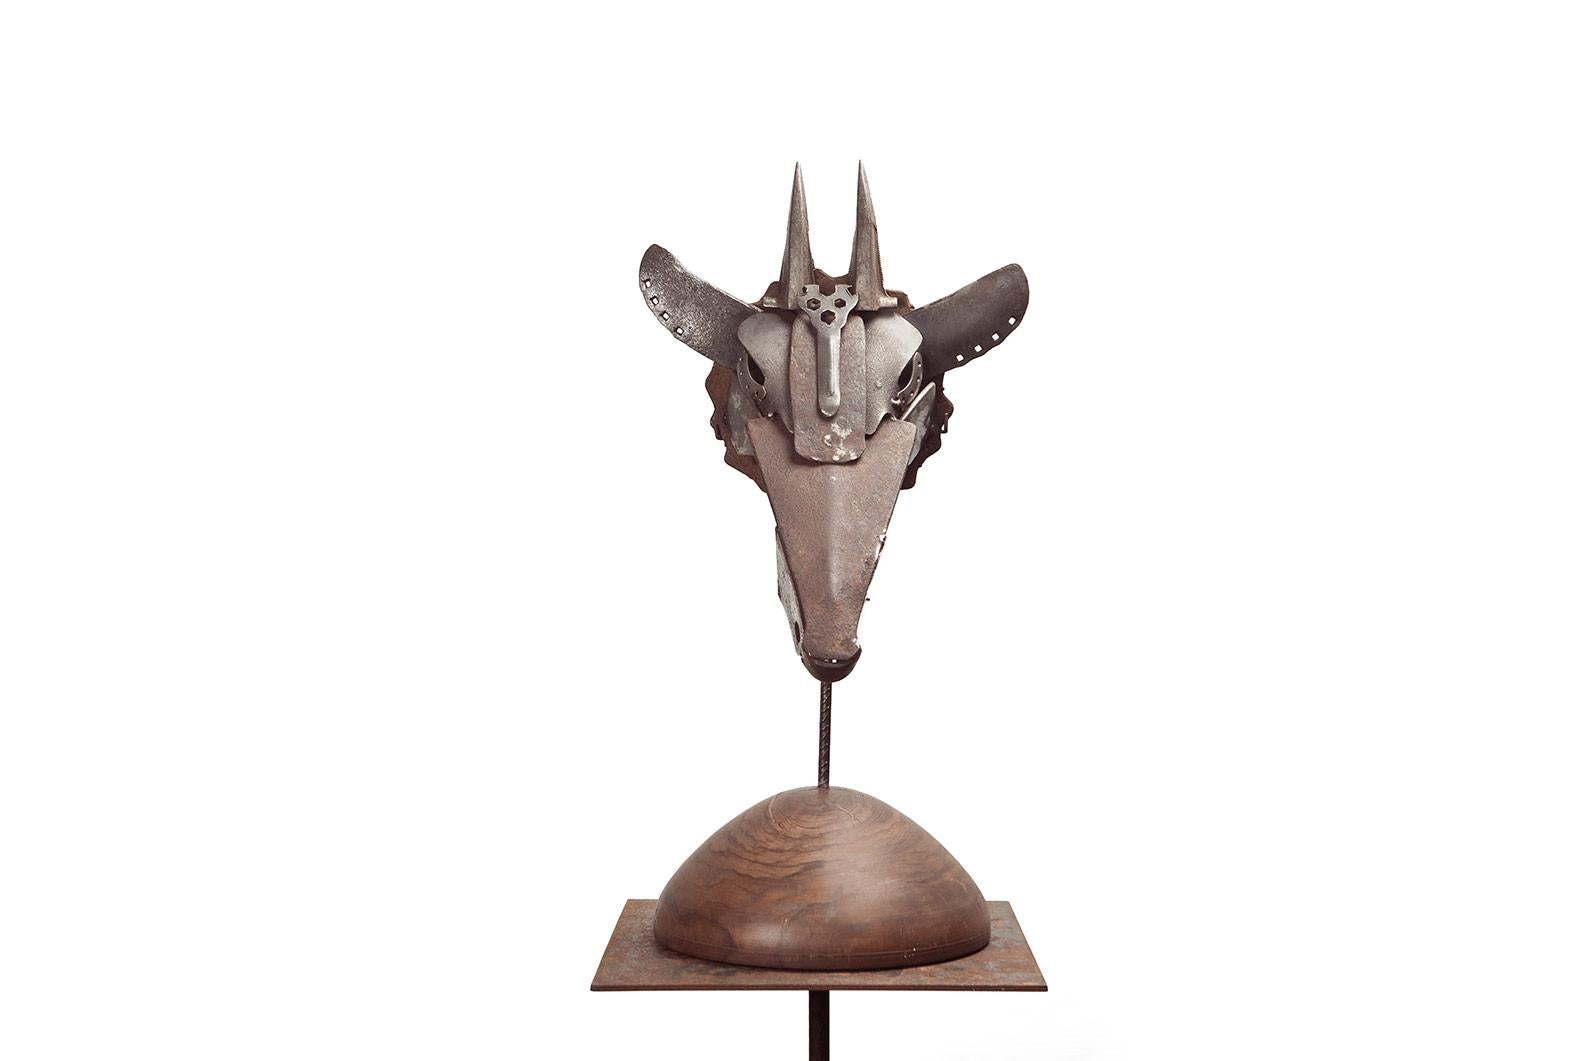 Miquel Aparici Figurative Sculpture - Máscara Jirafa - 21st Cent, Contemporary Sculpture, Figurative, Recycled Objects